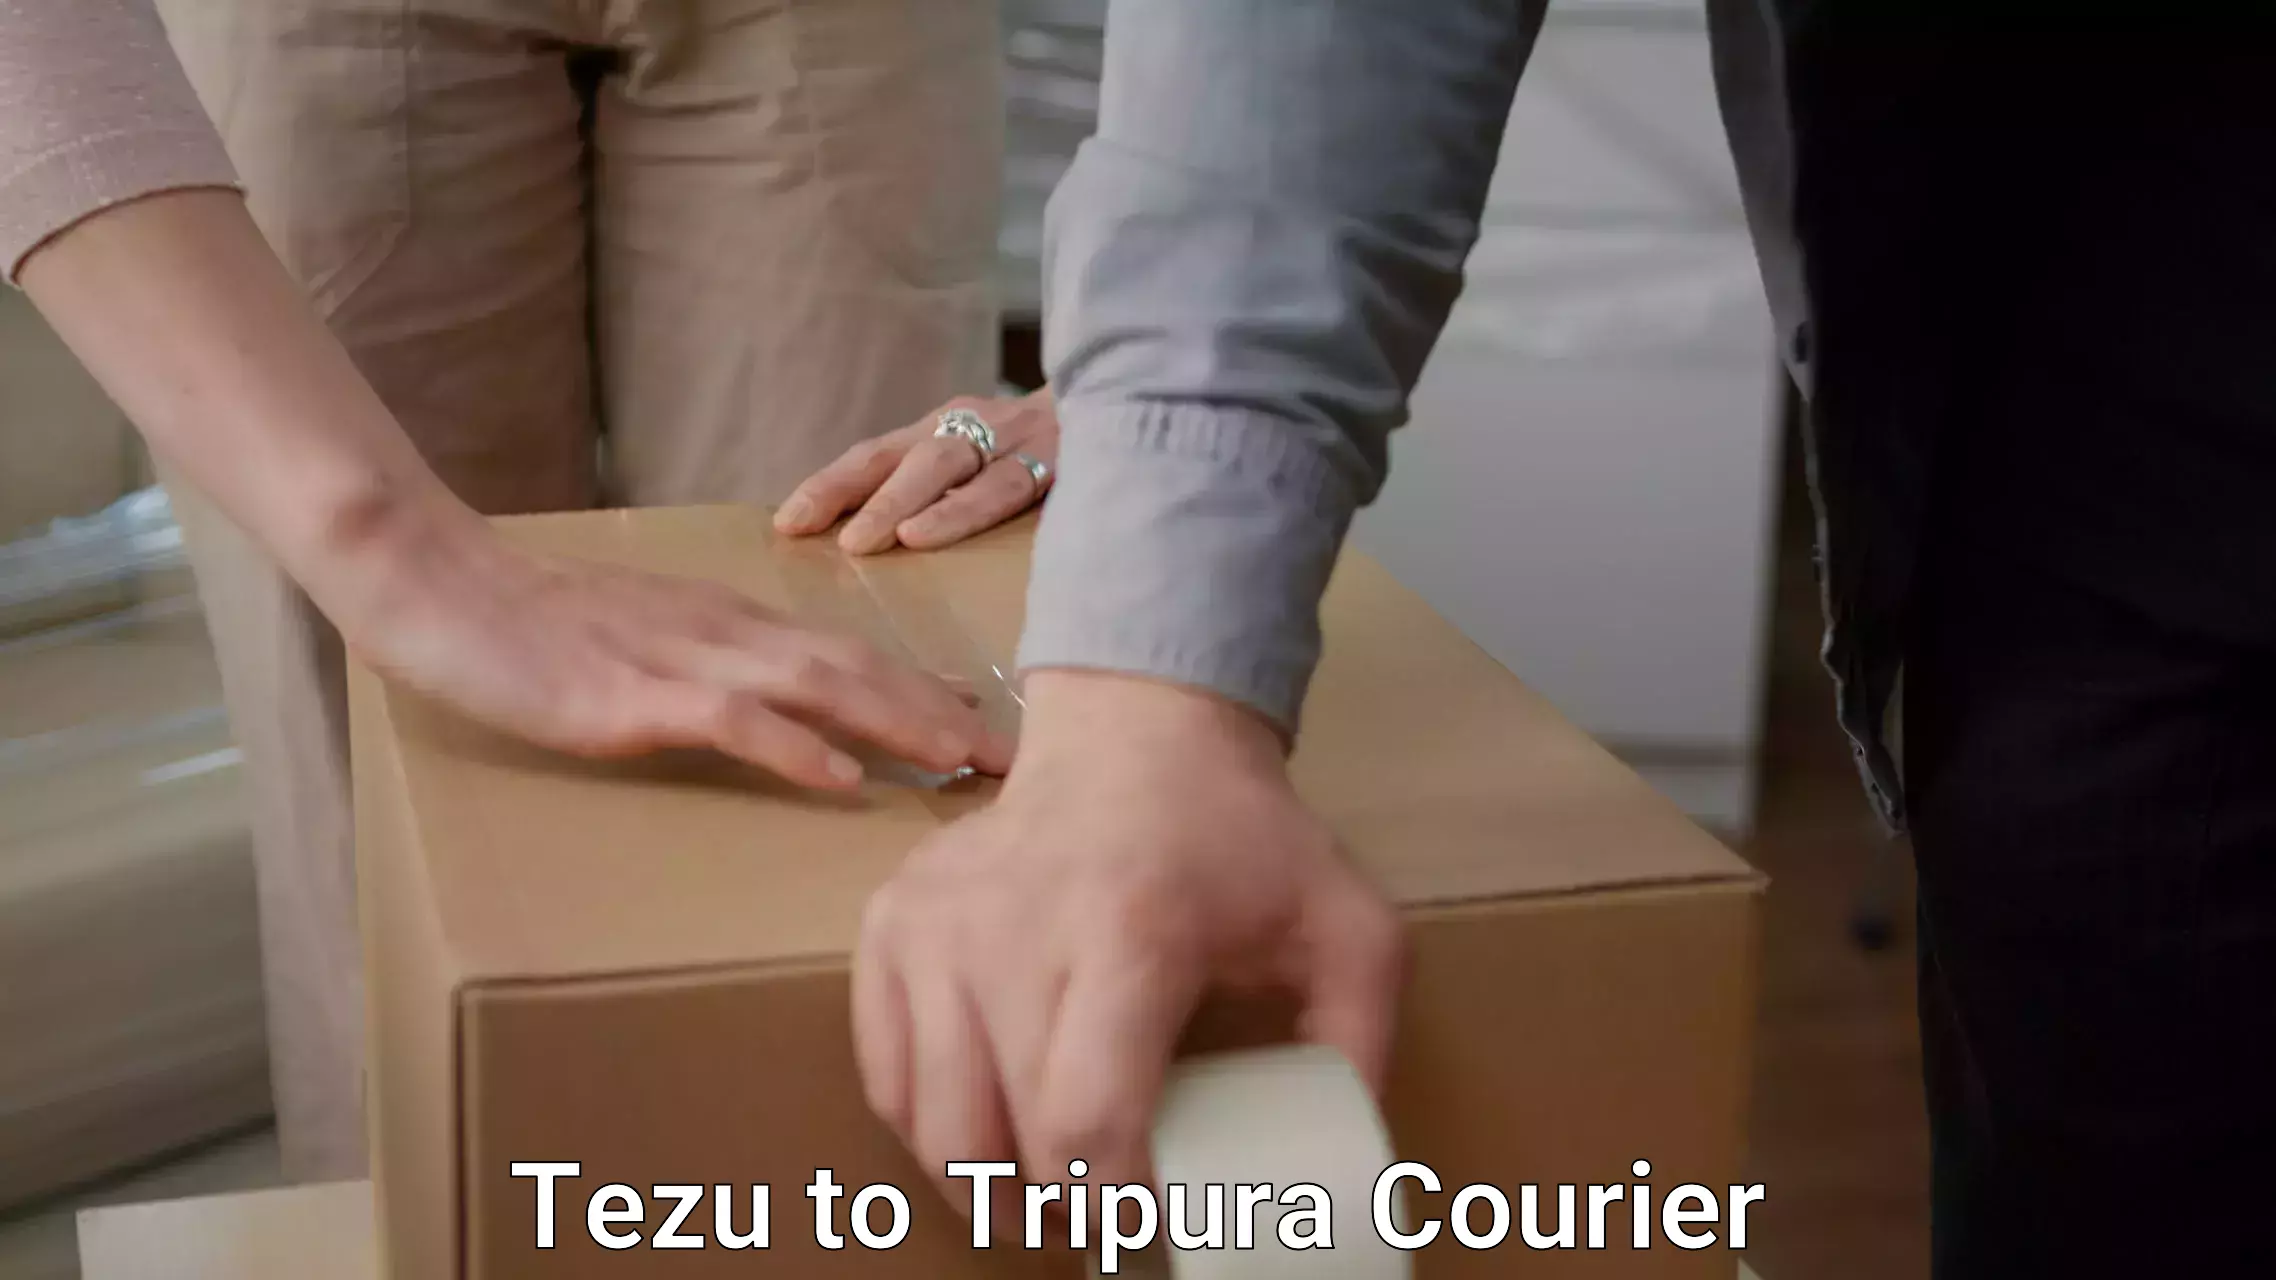 Furniture transport service Tezu to Tripura